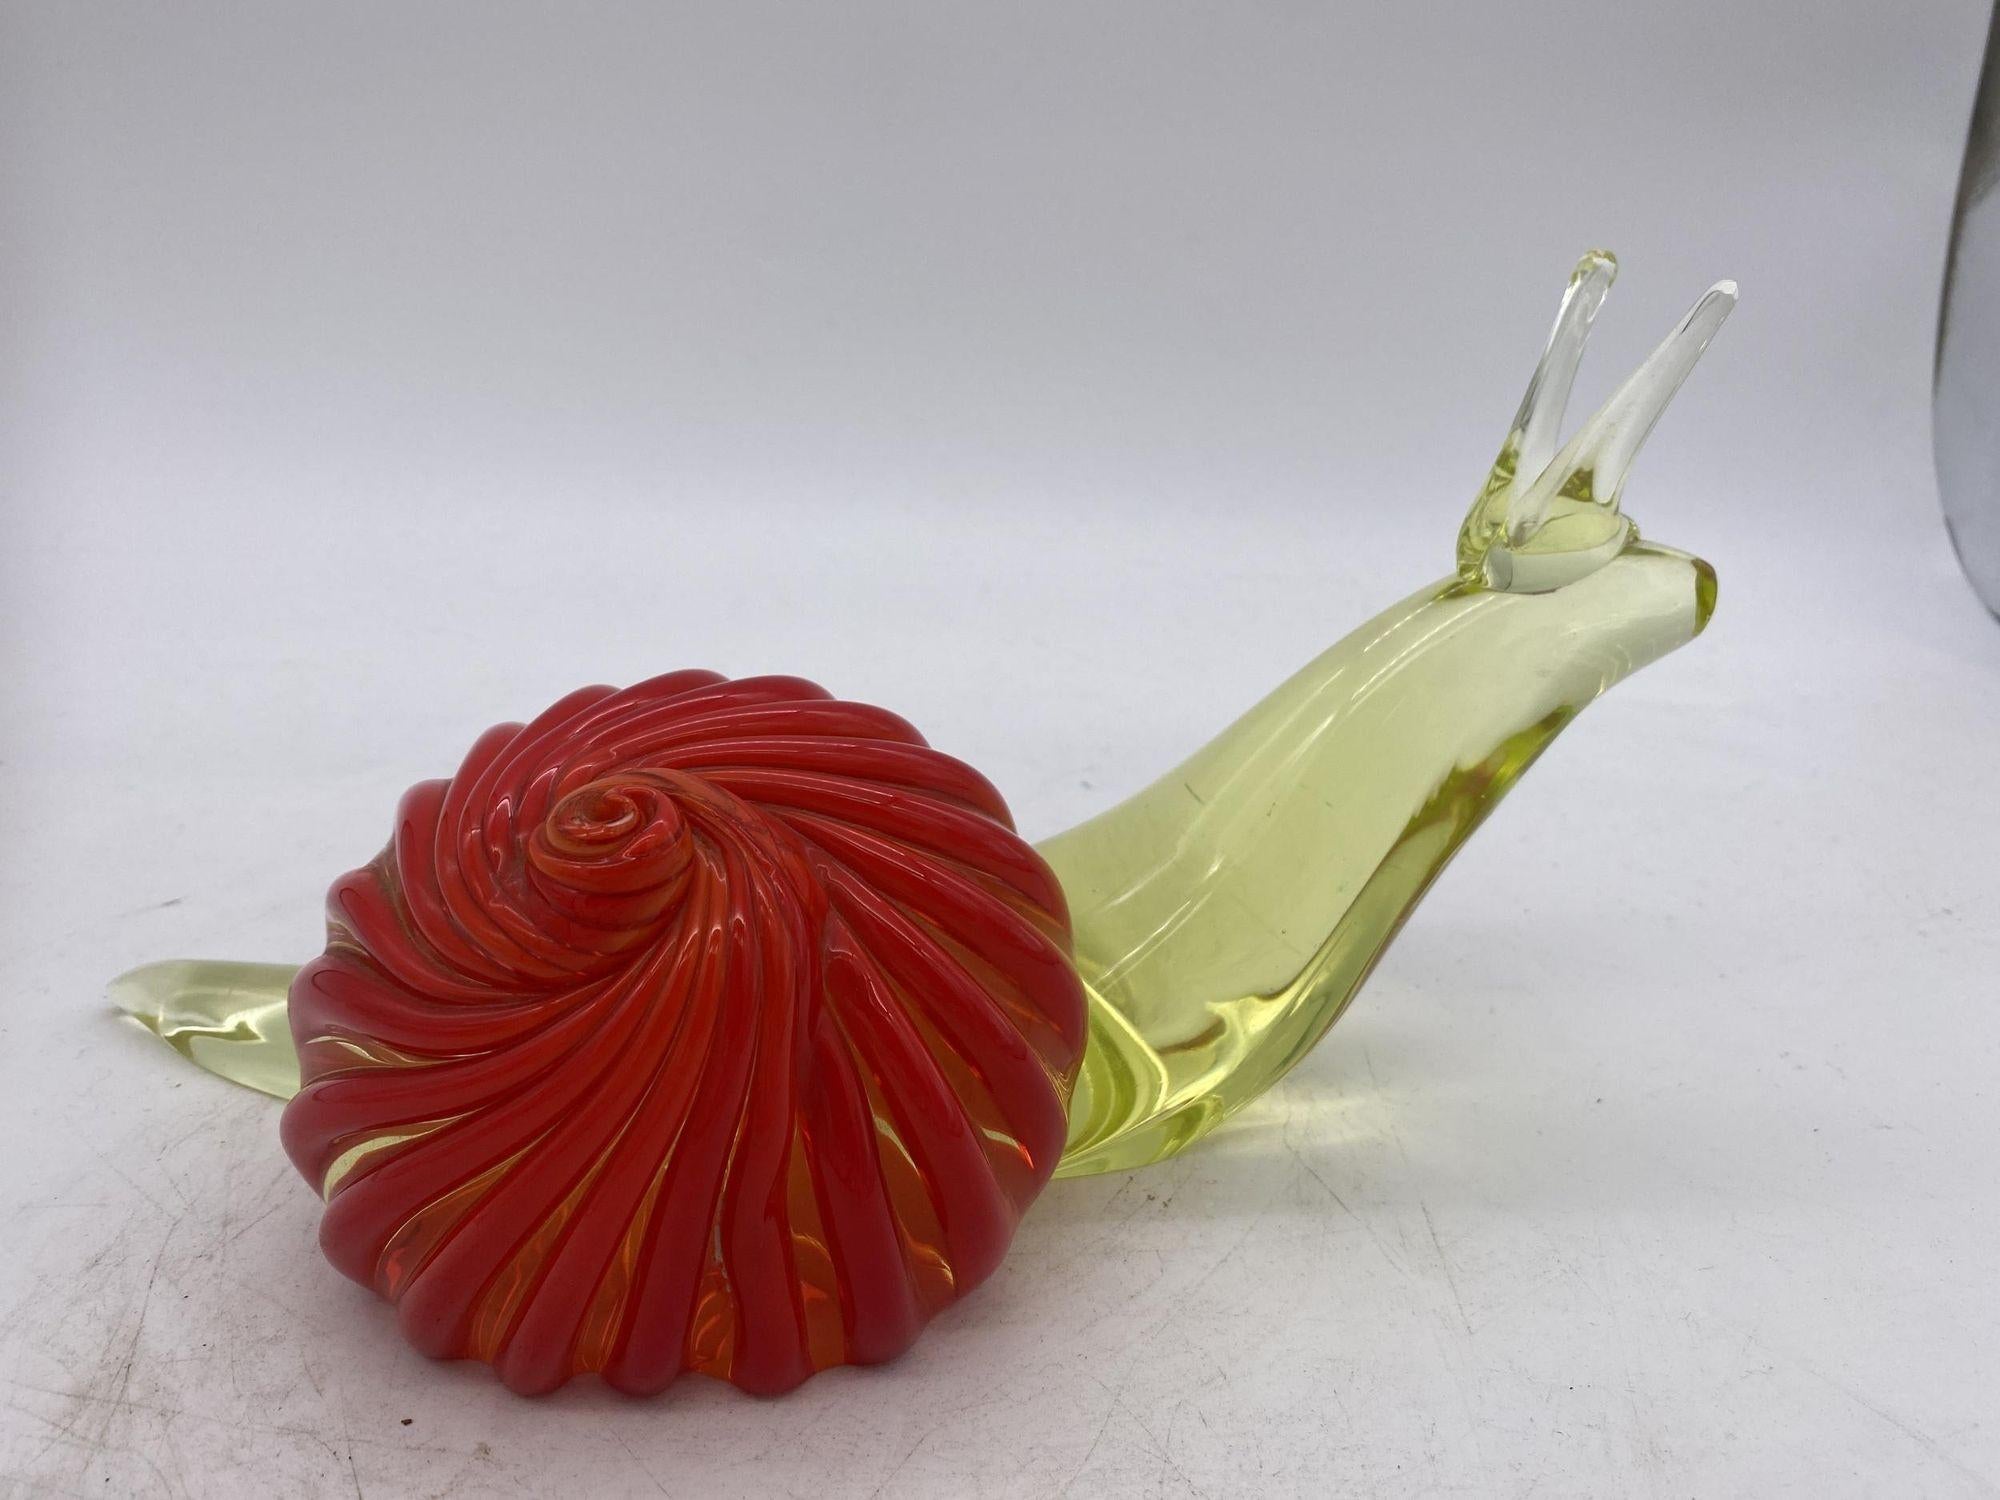 Murano Glas Schnecke Skulptur Gelb und Rot Glas. Die Skulptur wird vollständig von Hand im Ofen hergestellt und ihre Form und ihre Details werden ohne die Verwendung von Gussformen gegeben. Mit viel Liebe zum Detail ist sie ein voller Ausdruck